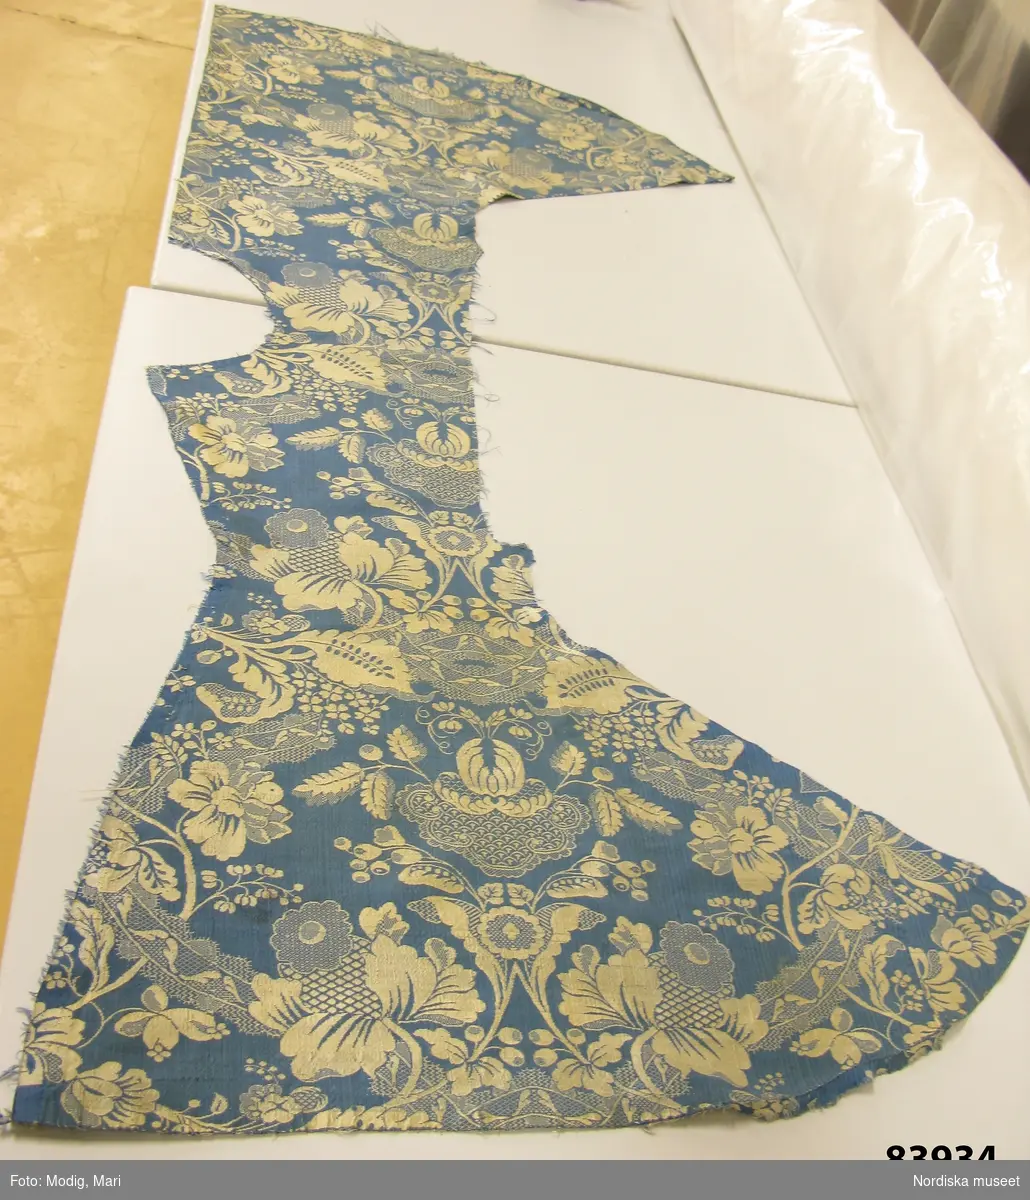 Kvinnokofta av mönstervävt siden, blå botten med blom-och bandmönster i vitt. Skuren i 2 delar. Nu uppsprättad och med delvis bortskurna bitar.
/Berit Eldvik 2013-01-09